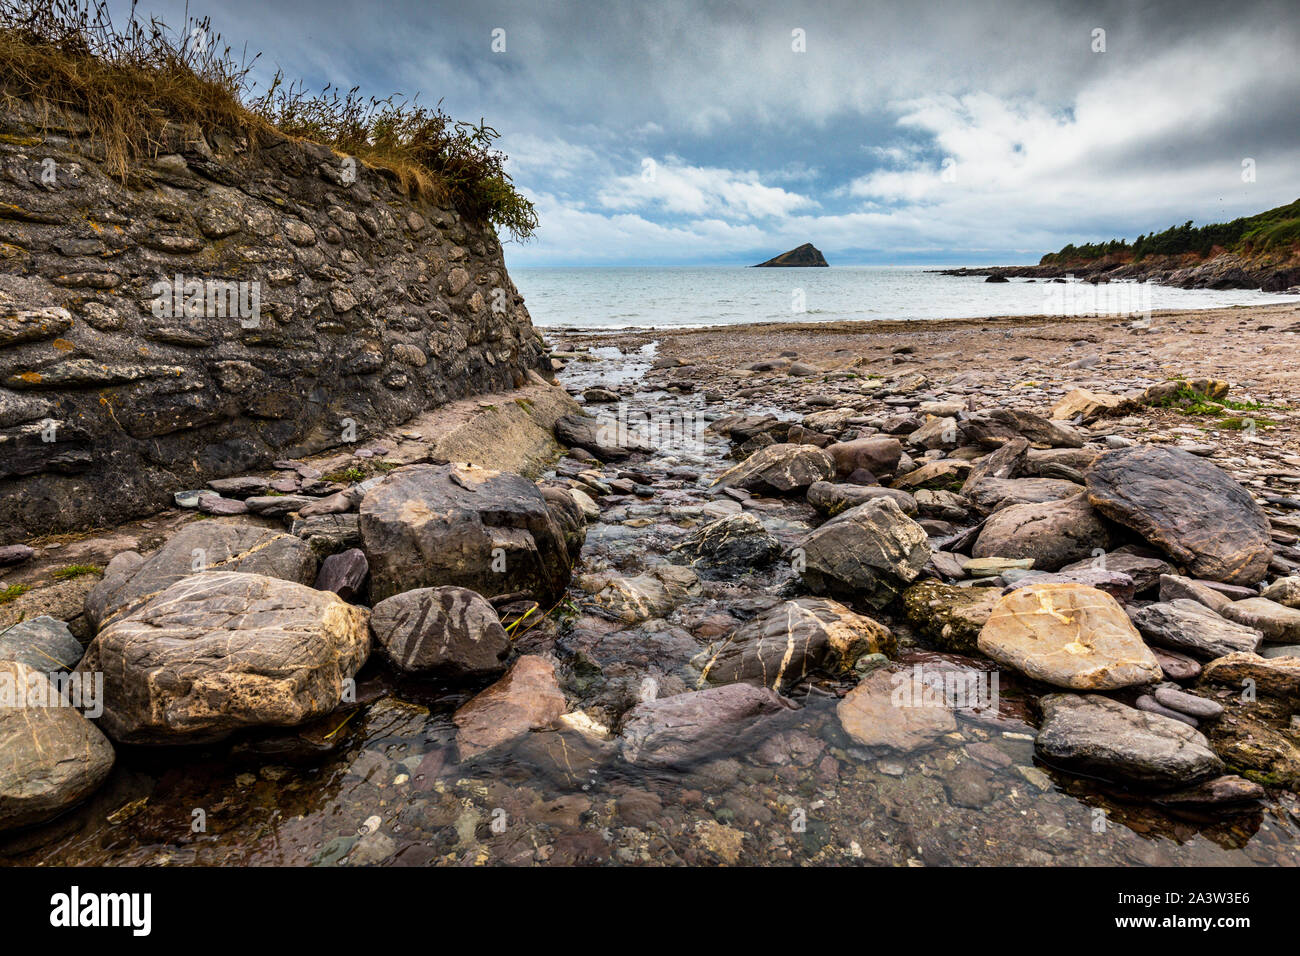 Wembury plage, près de Plymouth, Devon. La roche dans la distance est la grande pierre Mew. Cette partie de la côte est la propriété du National Trust. Banque D'Images